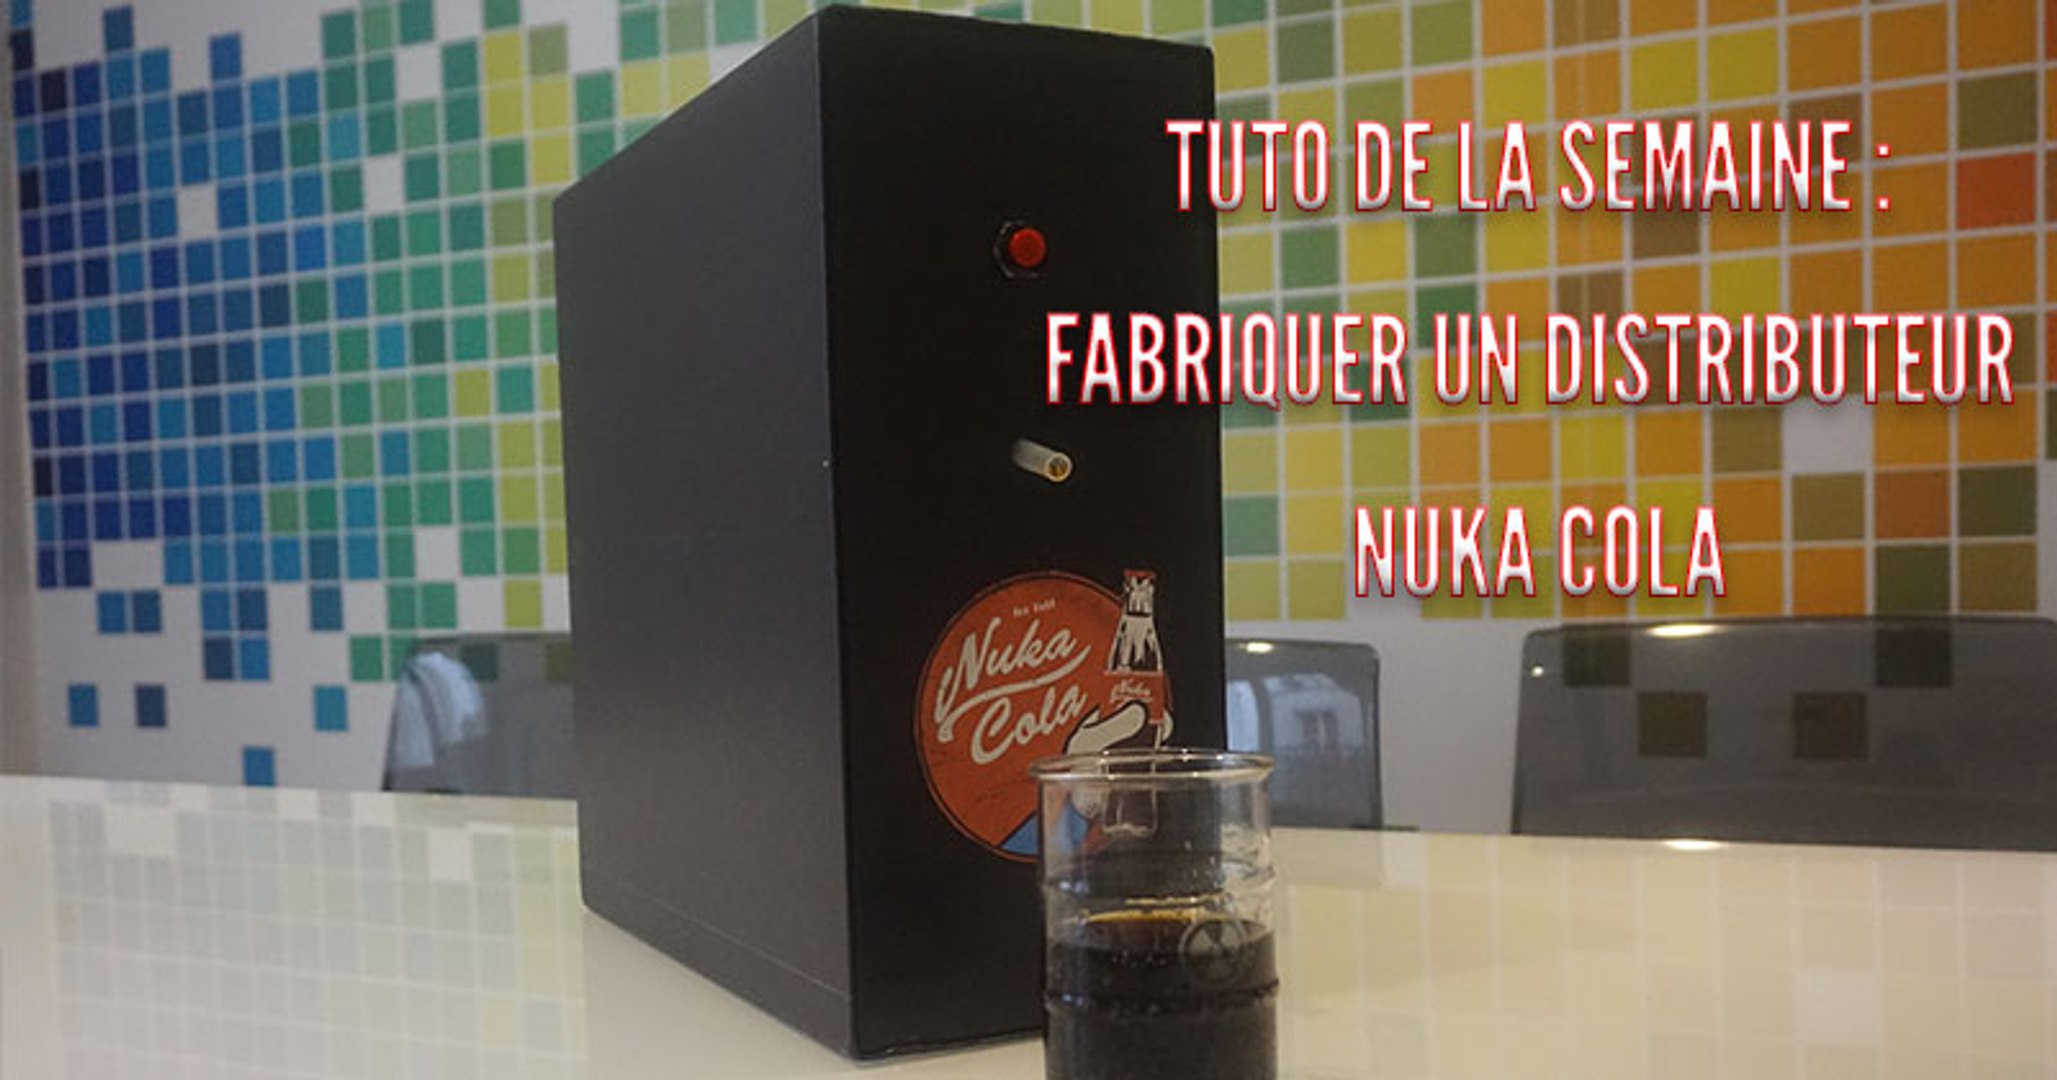 Fabriquer un distributeur de Nuka Cola - Tuto de la semaine - Vidéo  Dailymotion